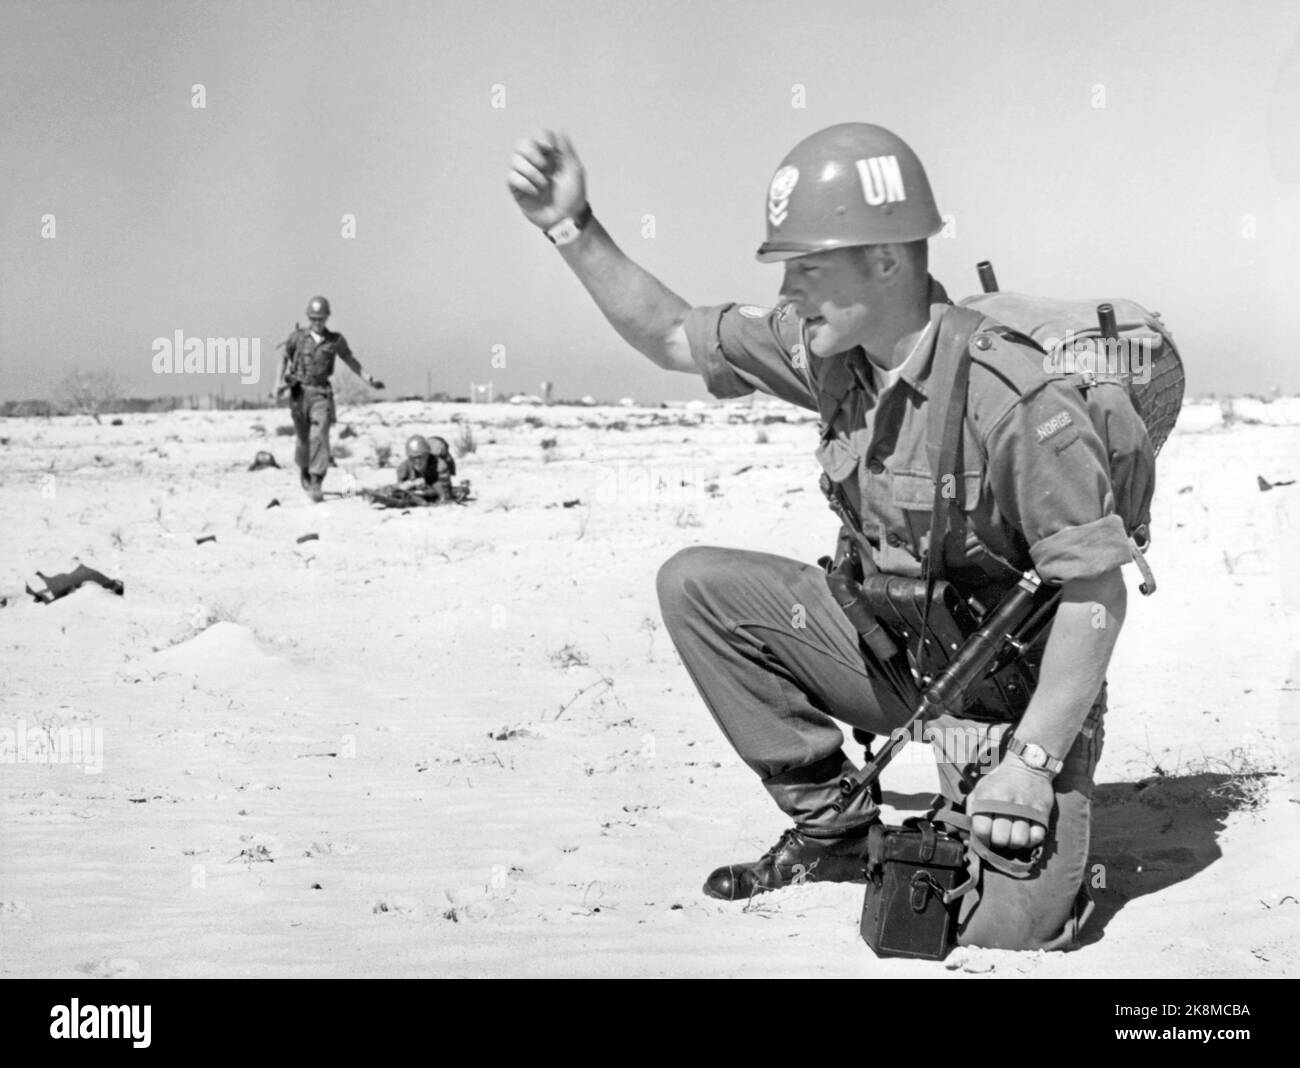 Ägypten 195702. Von 1957 bis 1967 wurden UN-Truppen auf dem Sinai eingesetzt, nachdem Israel den Sinai besetzt hatte (die Besatzung dauerte bis 1957). --- UN-Soldaten auf der Sinai-Halbinsel im Jahr 1957- un-Einsatztruppe auf der sinai-Halbinsel. Internationale UN-Truppen folgten dem israelischen Rückzug, und UN-Truppen wurden in der Sinai-Wüste eingesetzt, oft in der Nähe israelischer Stellungen. Bild: Bohrmaschine von 1. Bombenanschlägen aus KP. A. Huitfeldt. Die Ruinen sind Überreste ägyptischer Militäreinrichtungen, die die israelischen Streitkräfte vor dem Rückzug in die Stadt sprengten. Foto: Sverre A. Børretzen / Aktuell / NTB Stockfoto